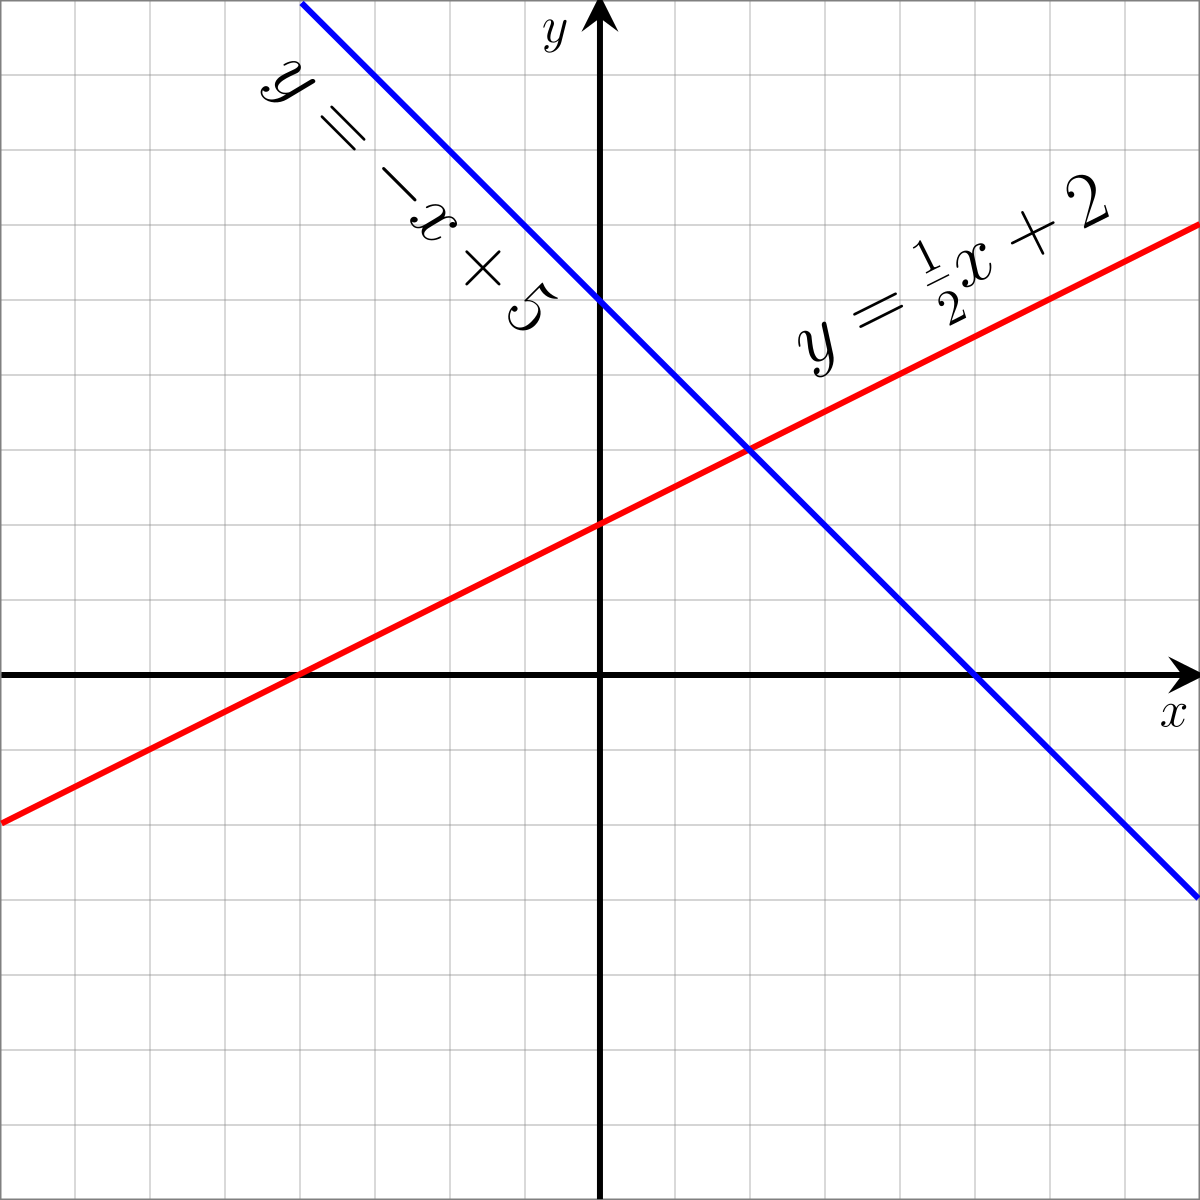 المعادلة الخطية تمثل بخط مستقيم